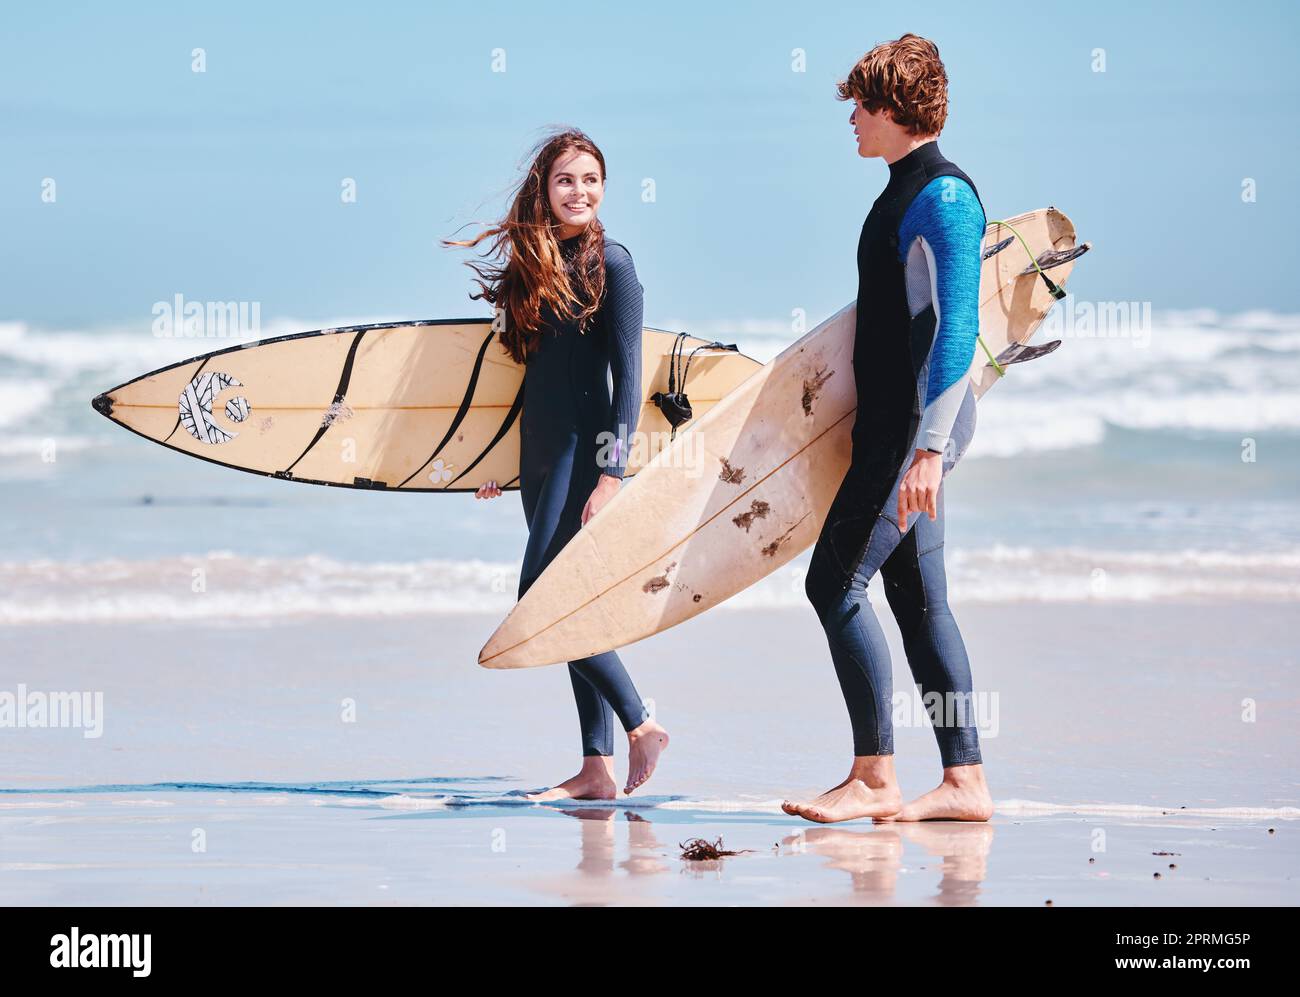 Surfen, Surfen und spazierende Freunde oder Mann und Frau am Strand oder Sandsprecher. Surfbrett, Konversation und Menschen auf dem Meer für Sport oder Sport, Training und Training für einen Surferwettbewerb Stockfoto